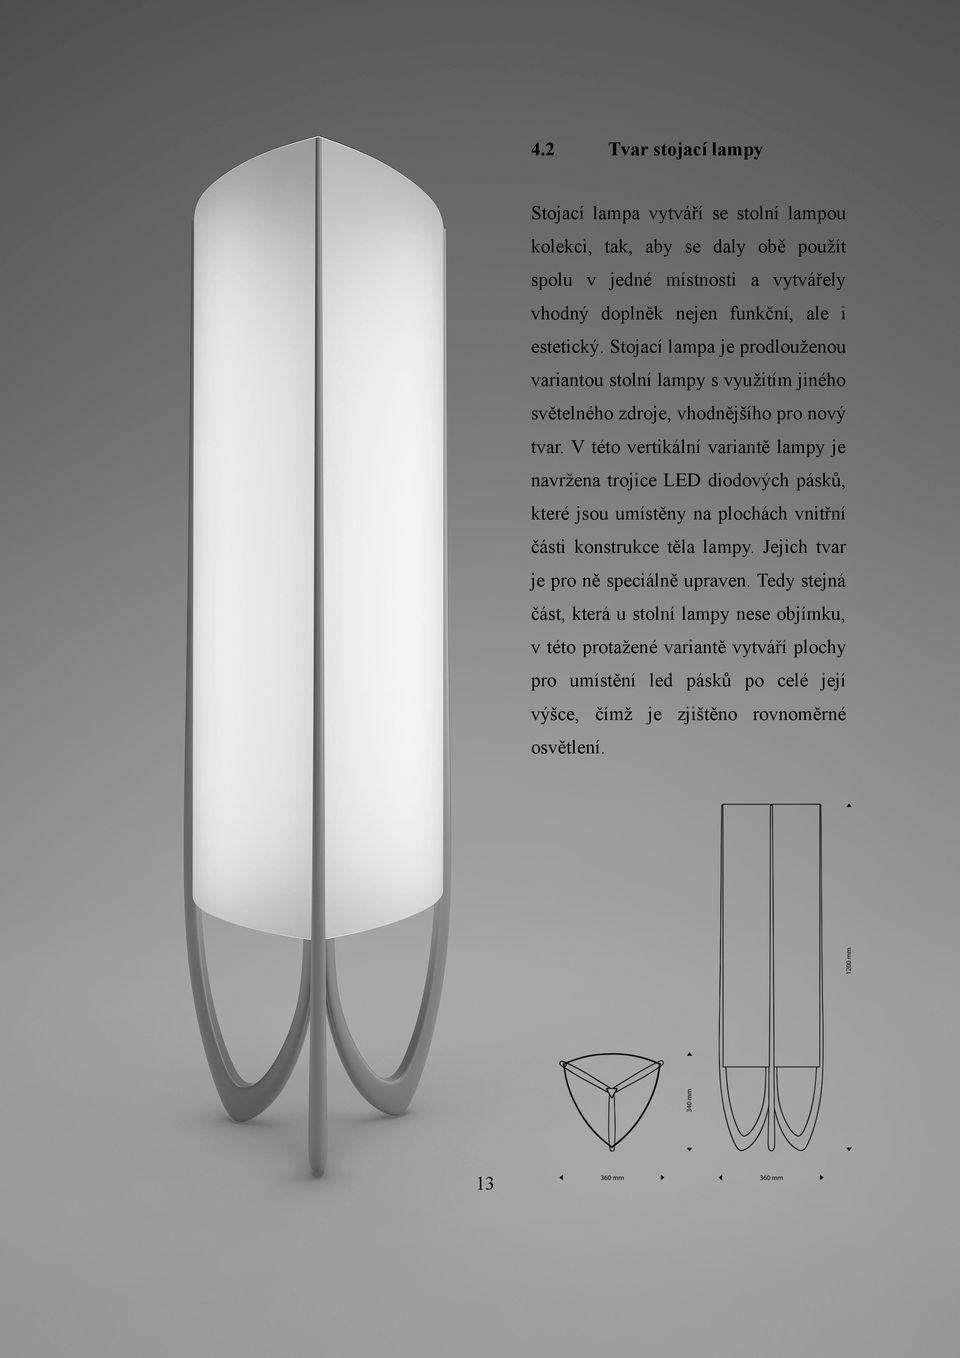 V této vertikální variantě lampy je navržena trojice LED diodových pásků, které jsou umístěny na plochách vnitřní části konstrukce těla lampy.